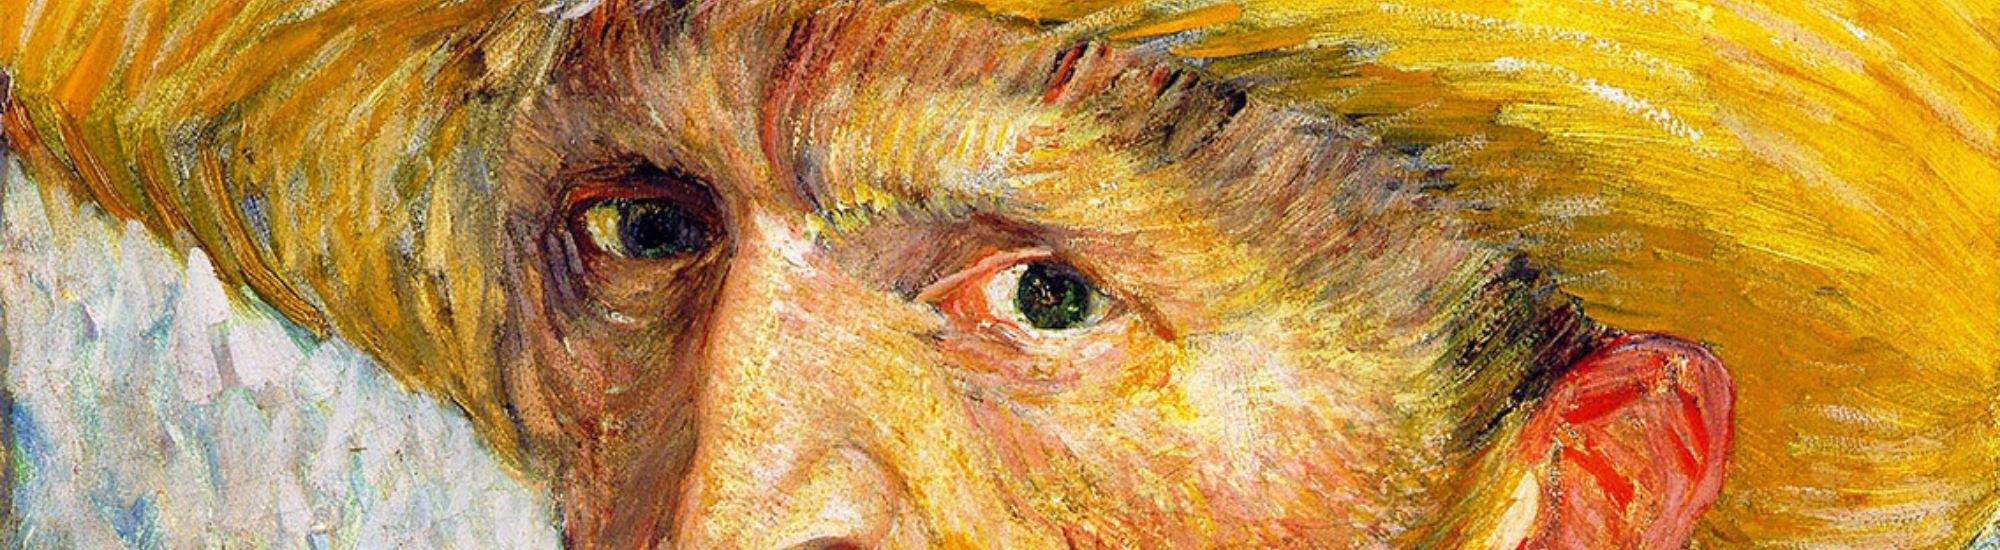 Multisensorisk Utstilling av Van Gogh i Krakow: Et Møte med Stor Kunst